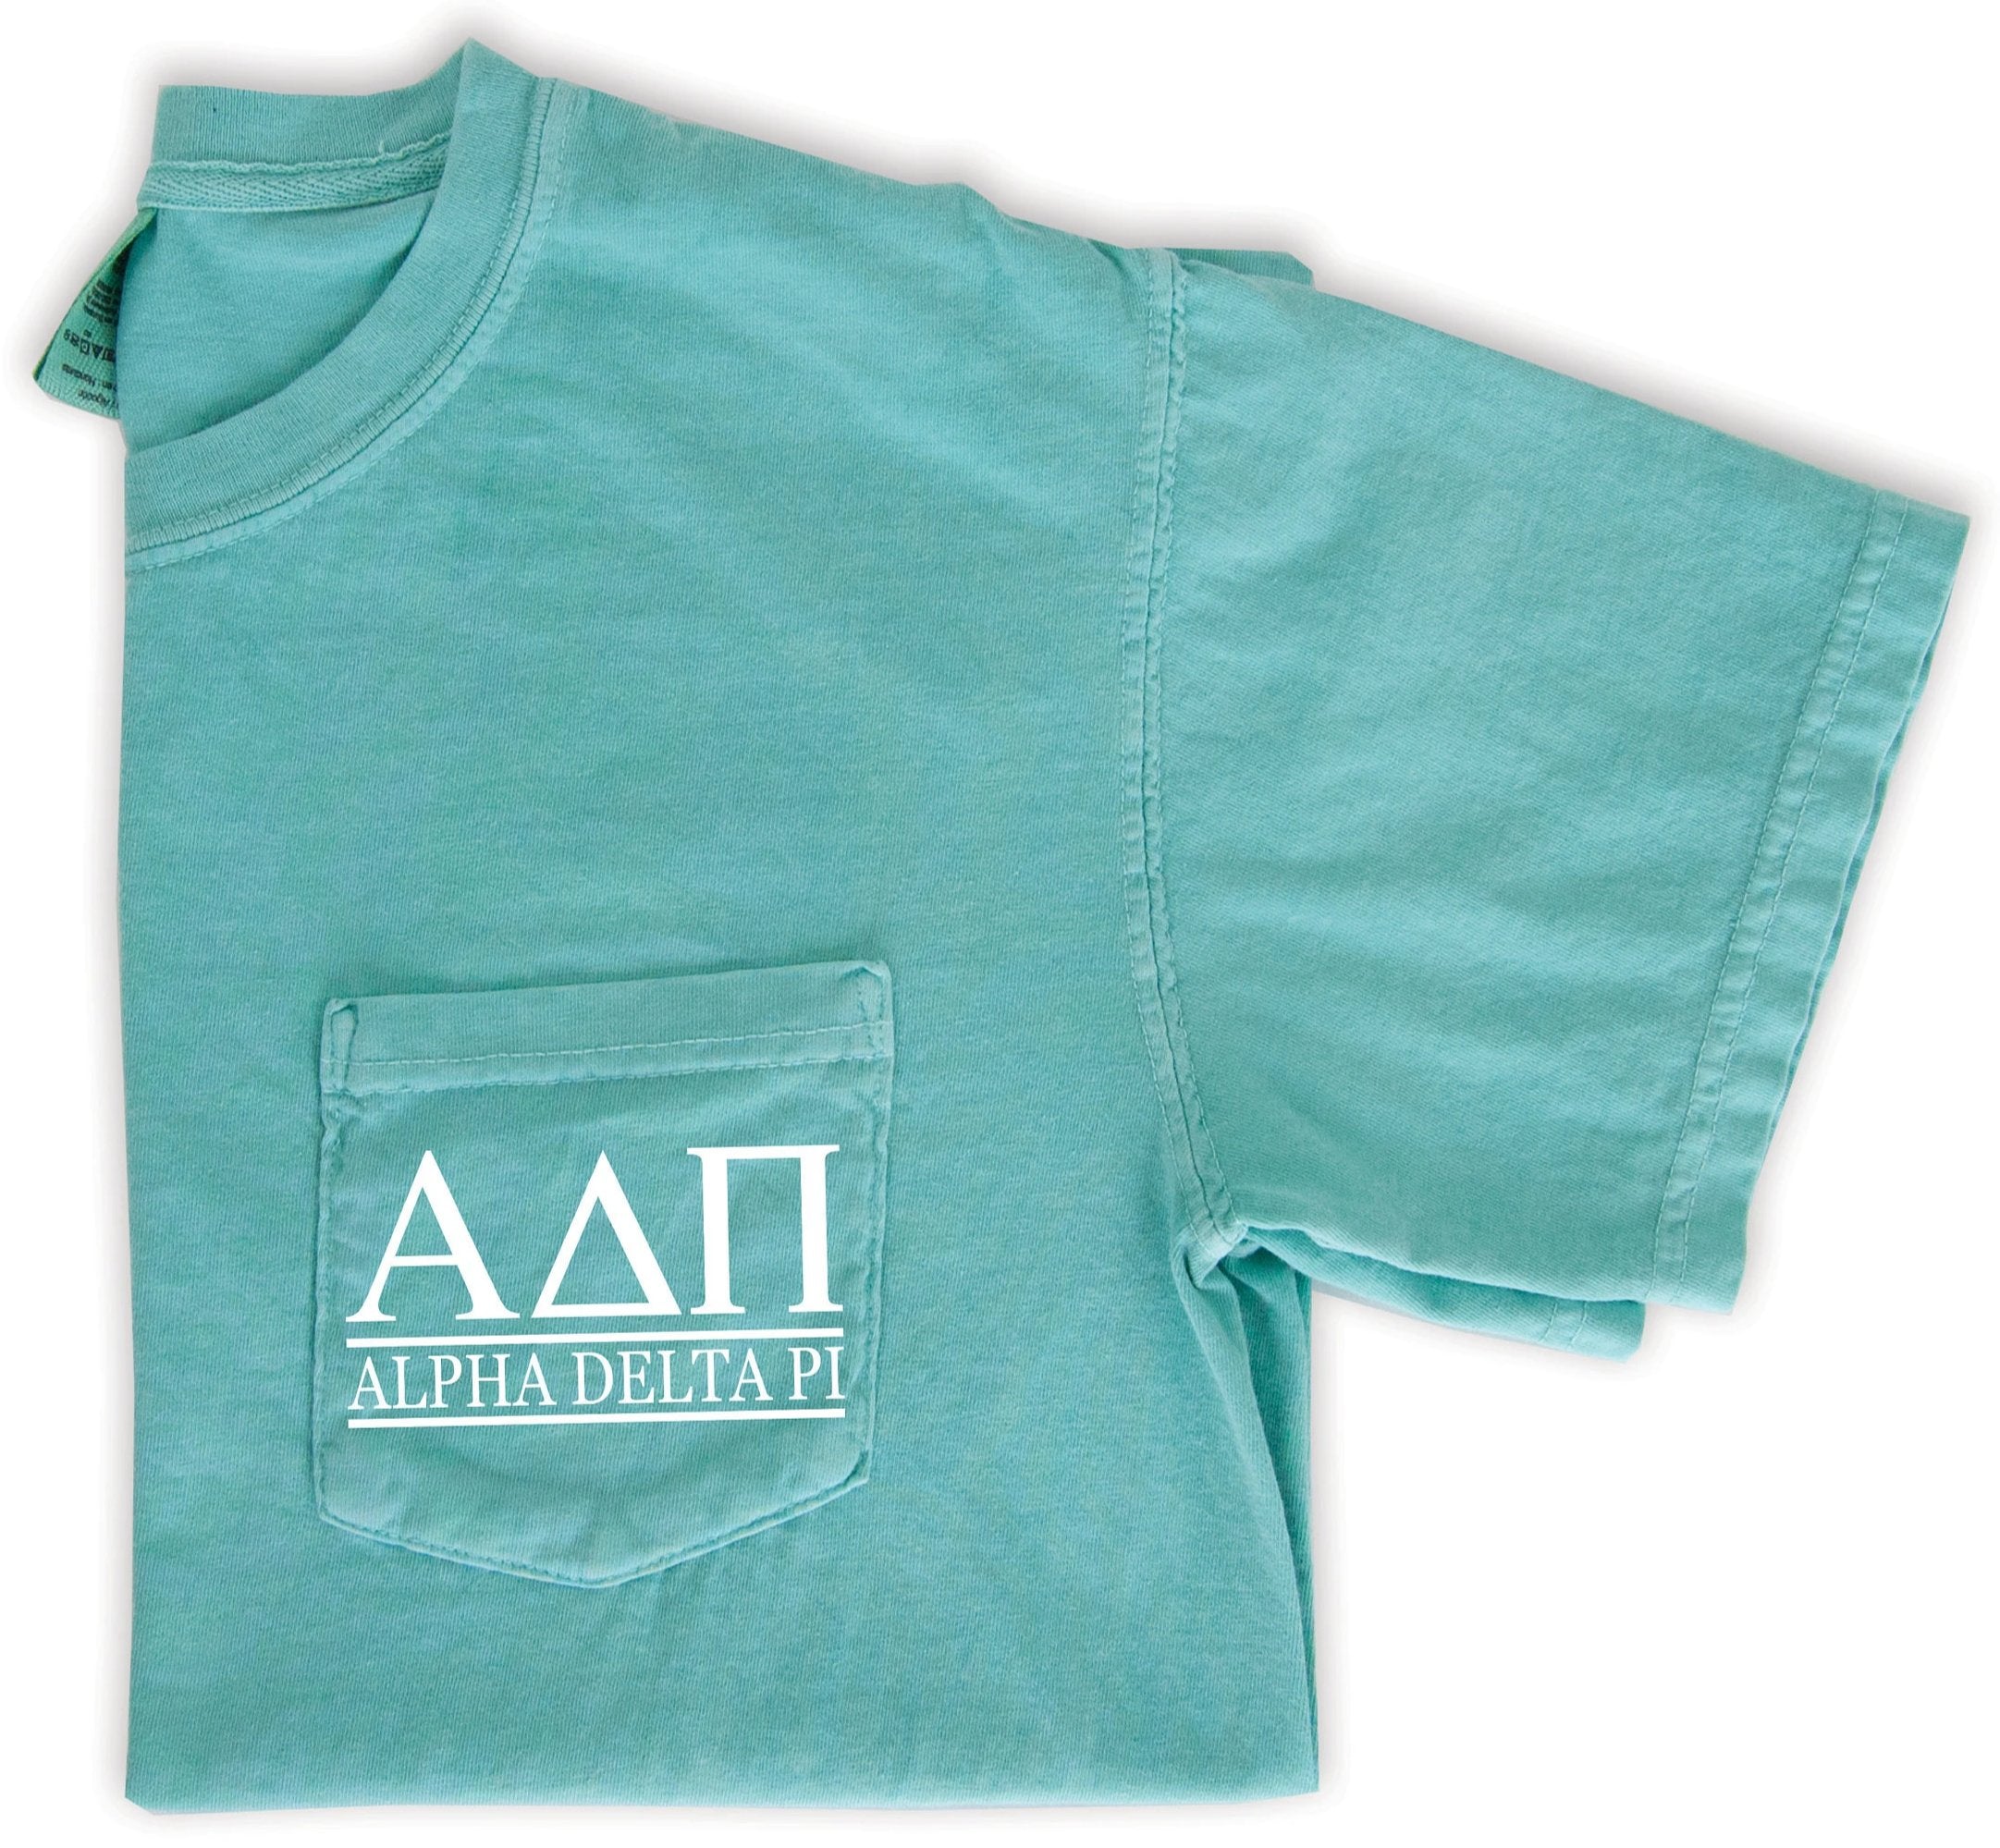 Alpha Delta Pi Block Letters T-Shirt - Go Greek Chic